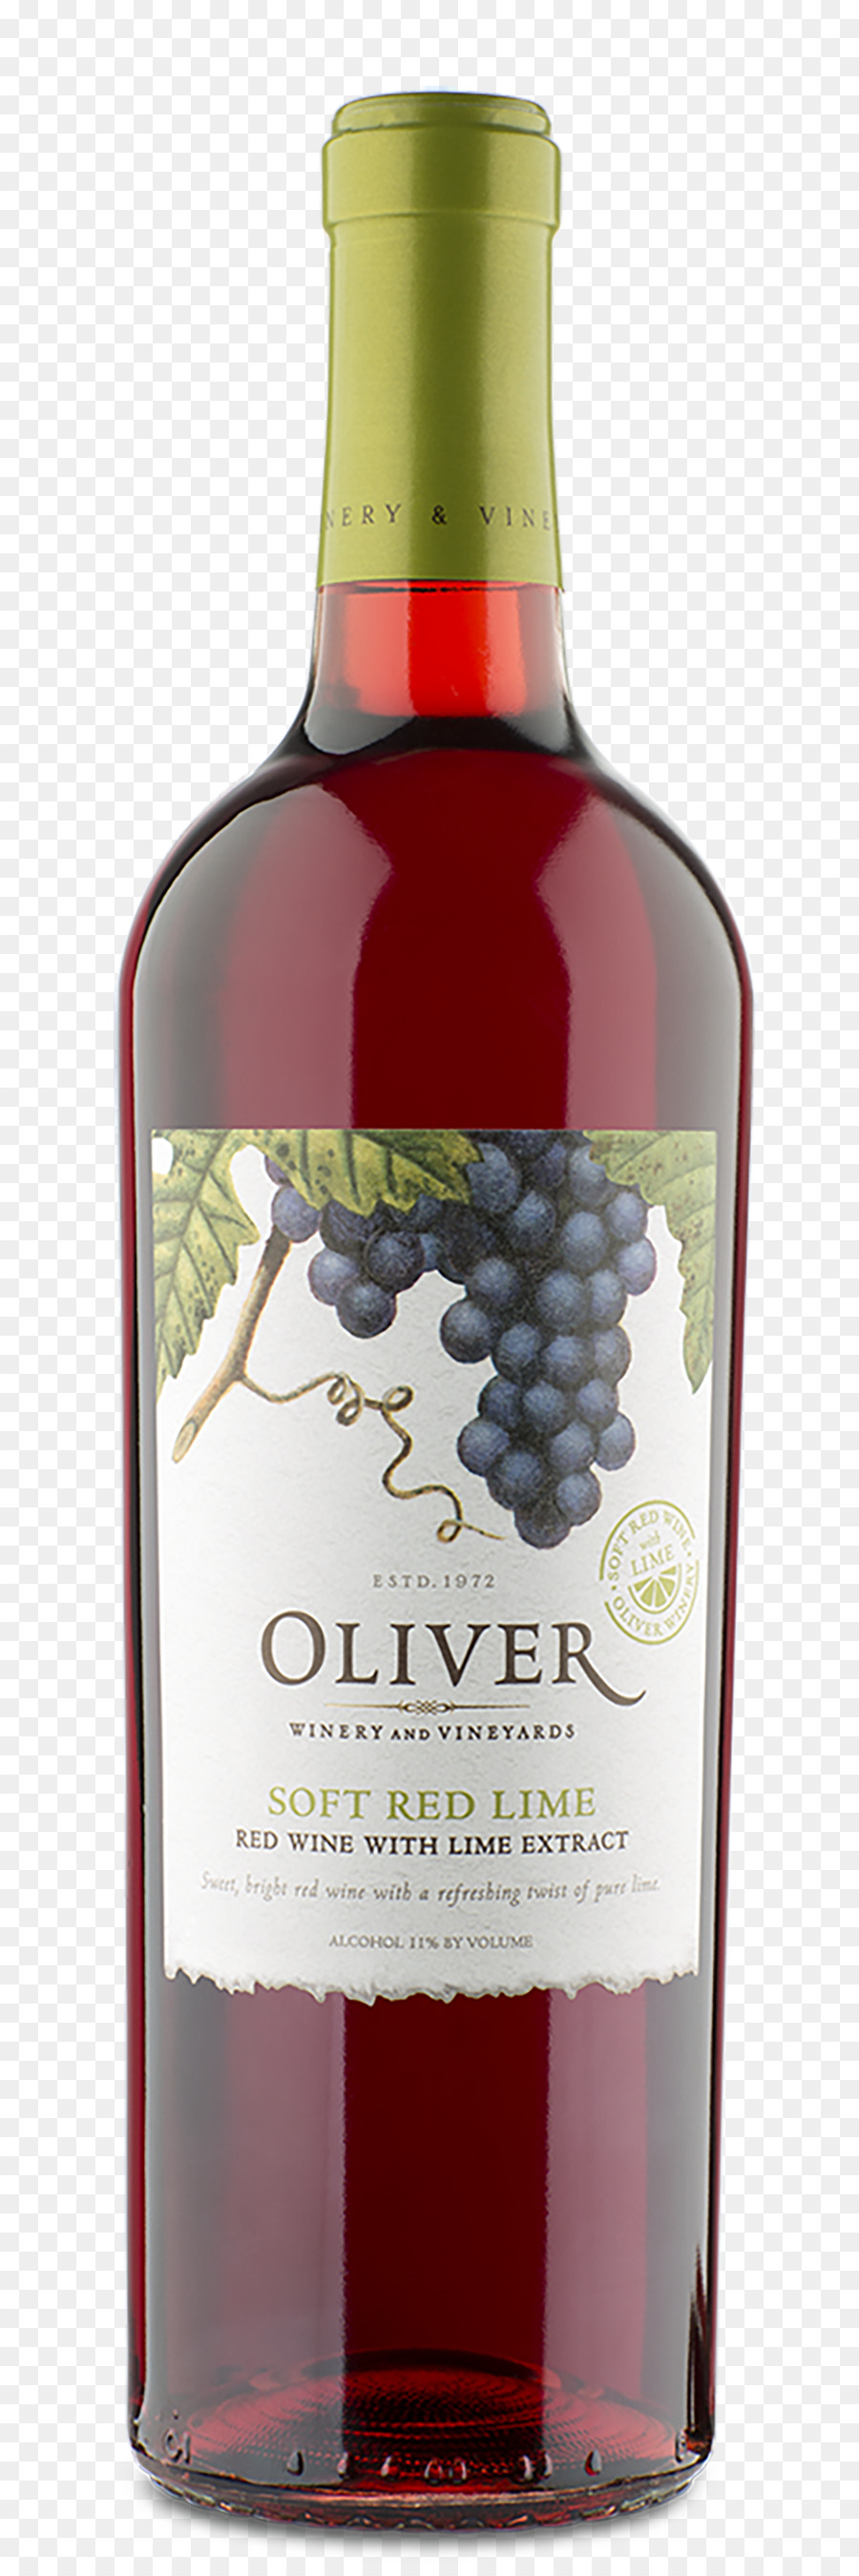 Dessertwein Oliver Winery Rotwein-Likör - oliver weicher Rotwein